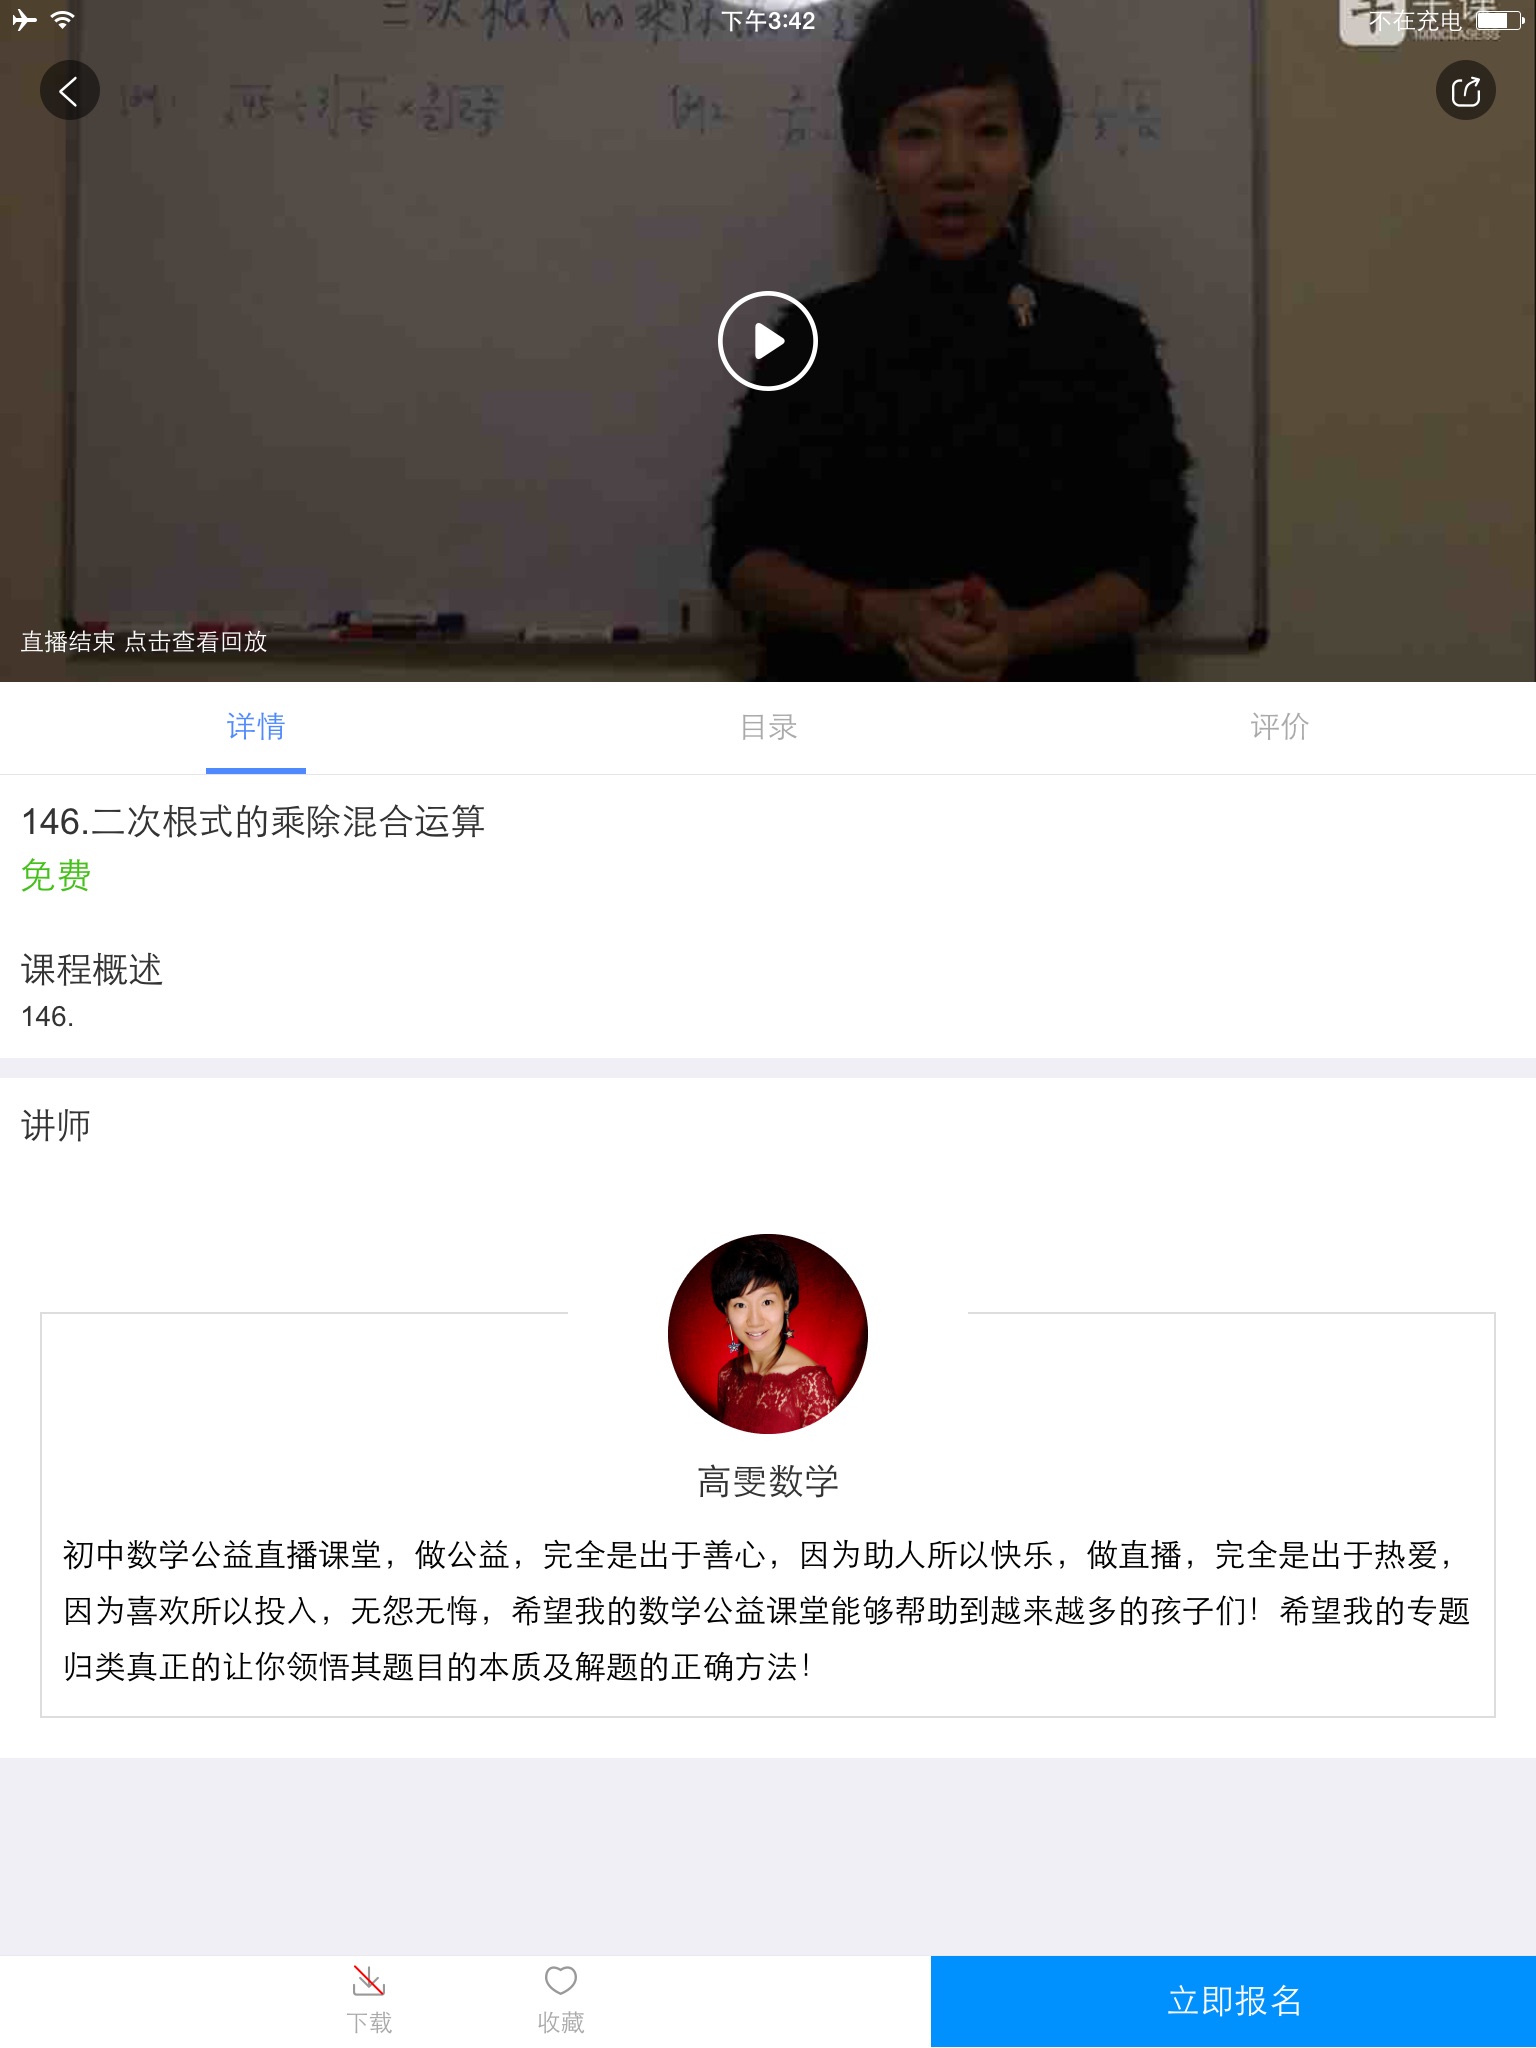 千课-互联网国际教育平台 screenshot 3